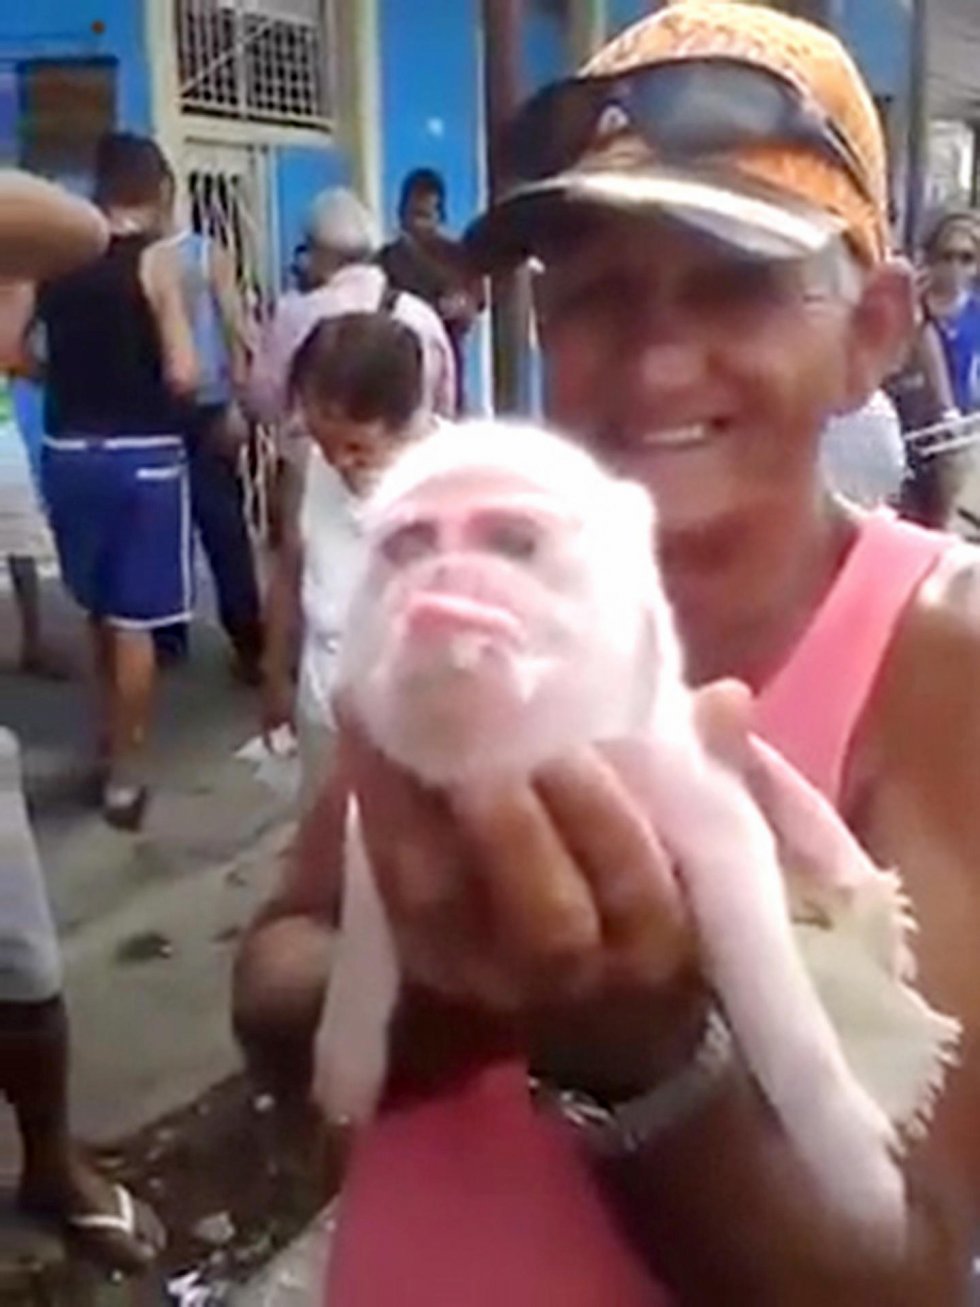 Denne gris er født med testikler i stedet for øjne